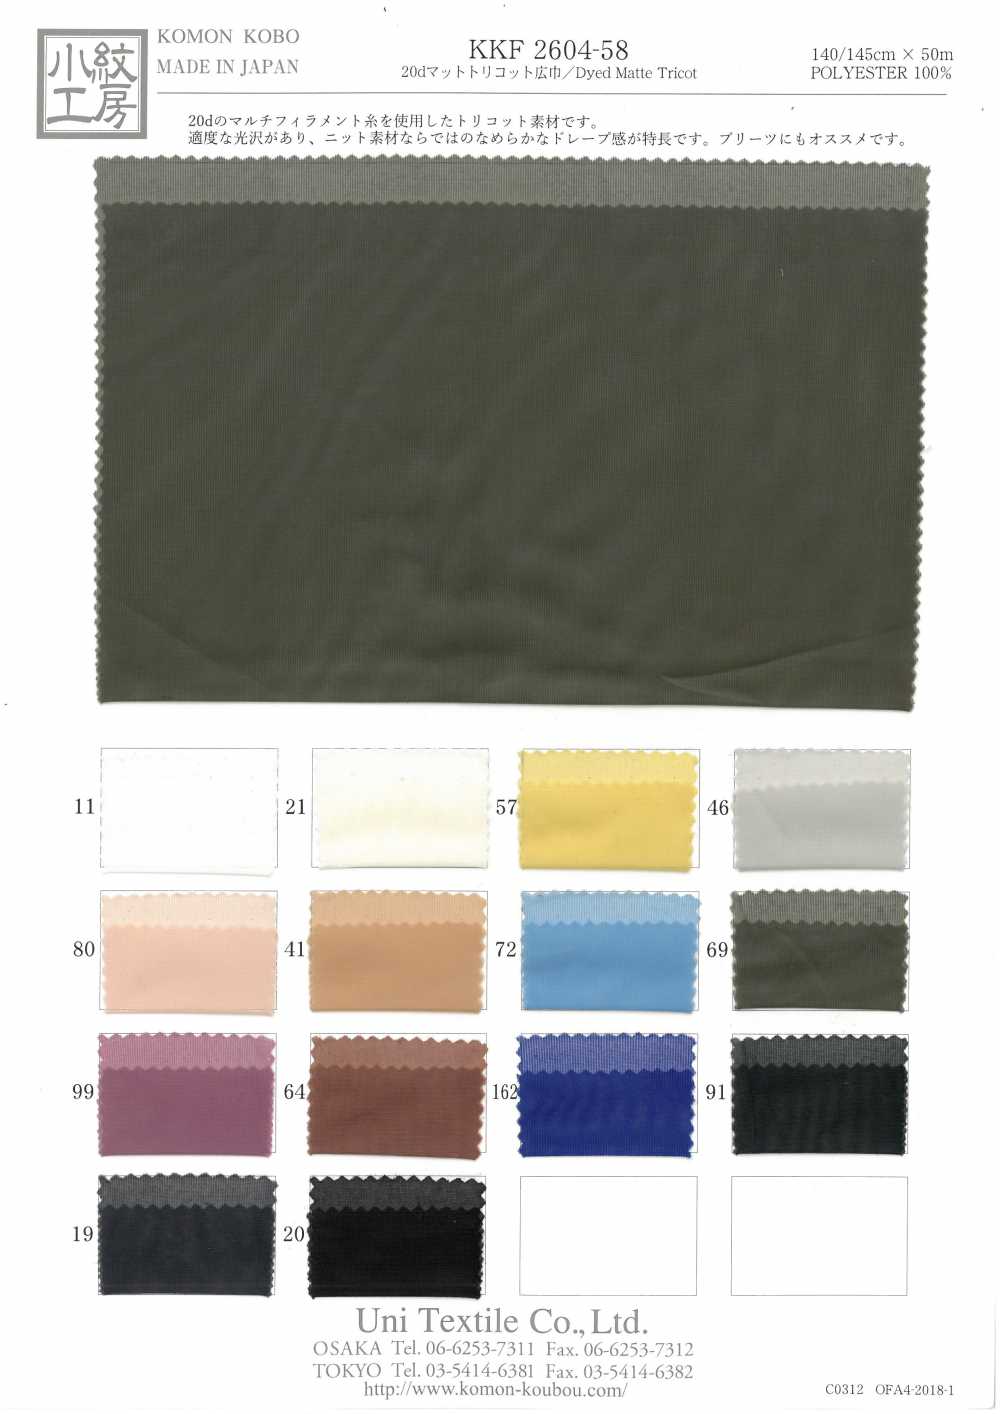 KKF2604-58 20d Matte Tricot Wide Width[Textile / Fabric] Uni Textile